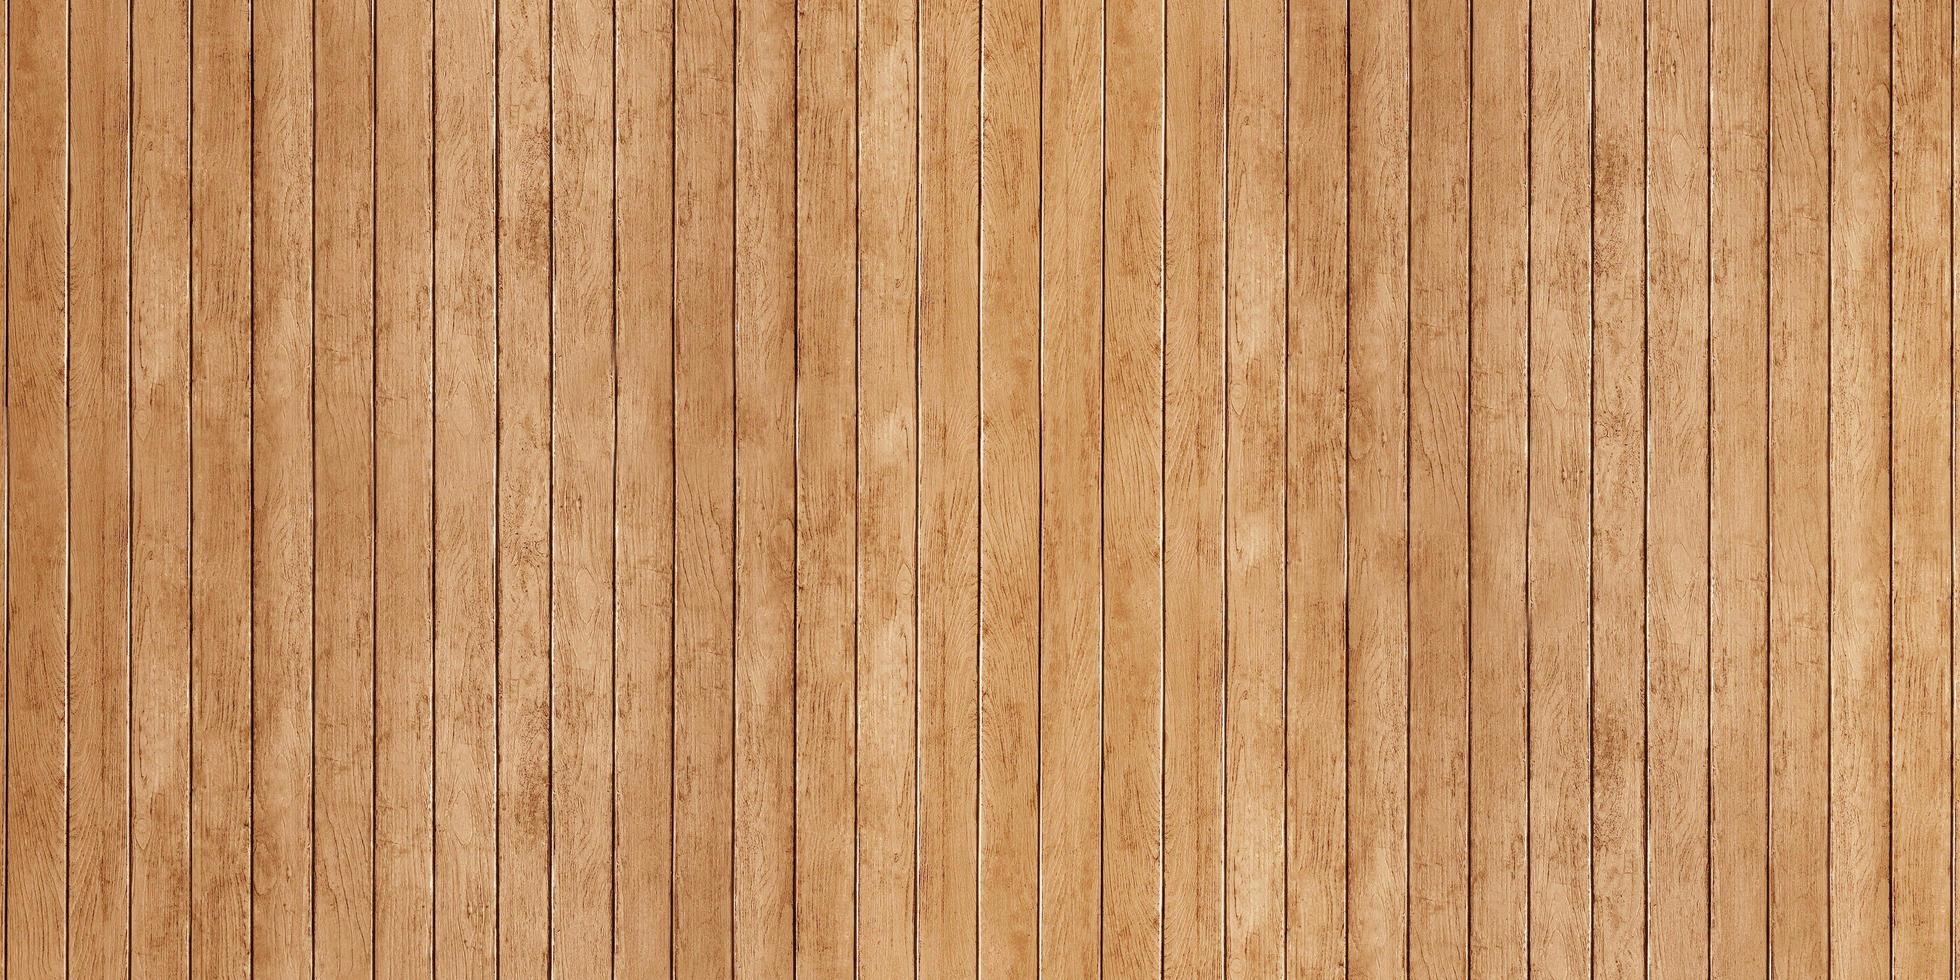 illustration 3d de planche de fond de texture de bois ancien photo